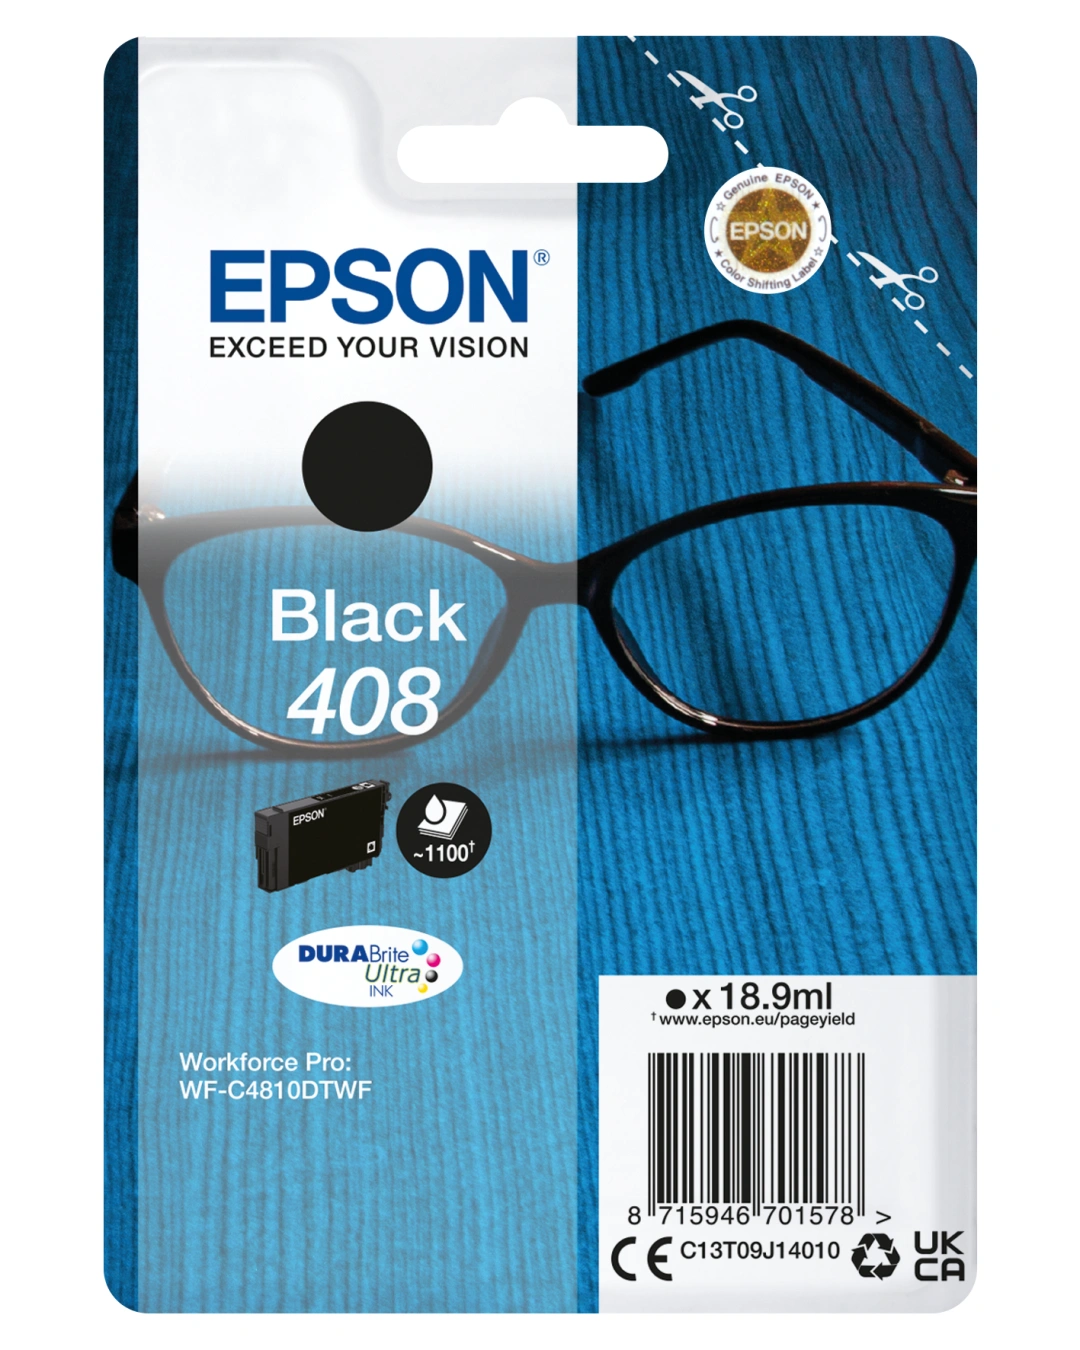 Epson Black 408 DURABrite Ultra Ink